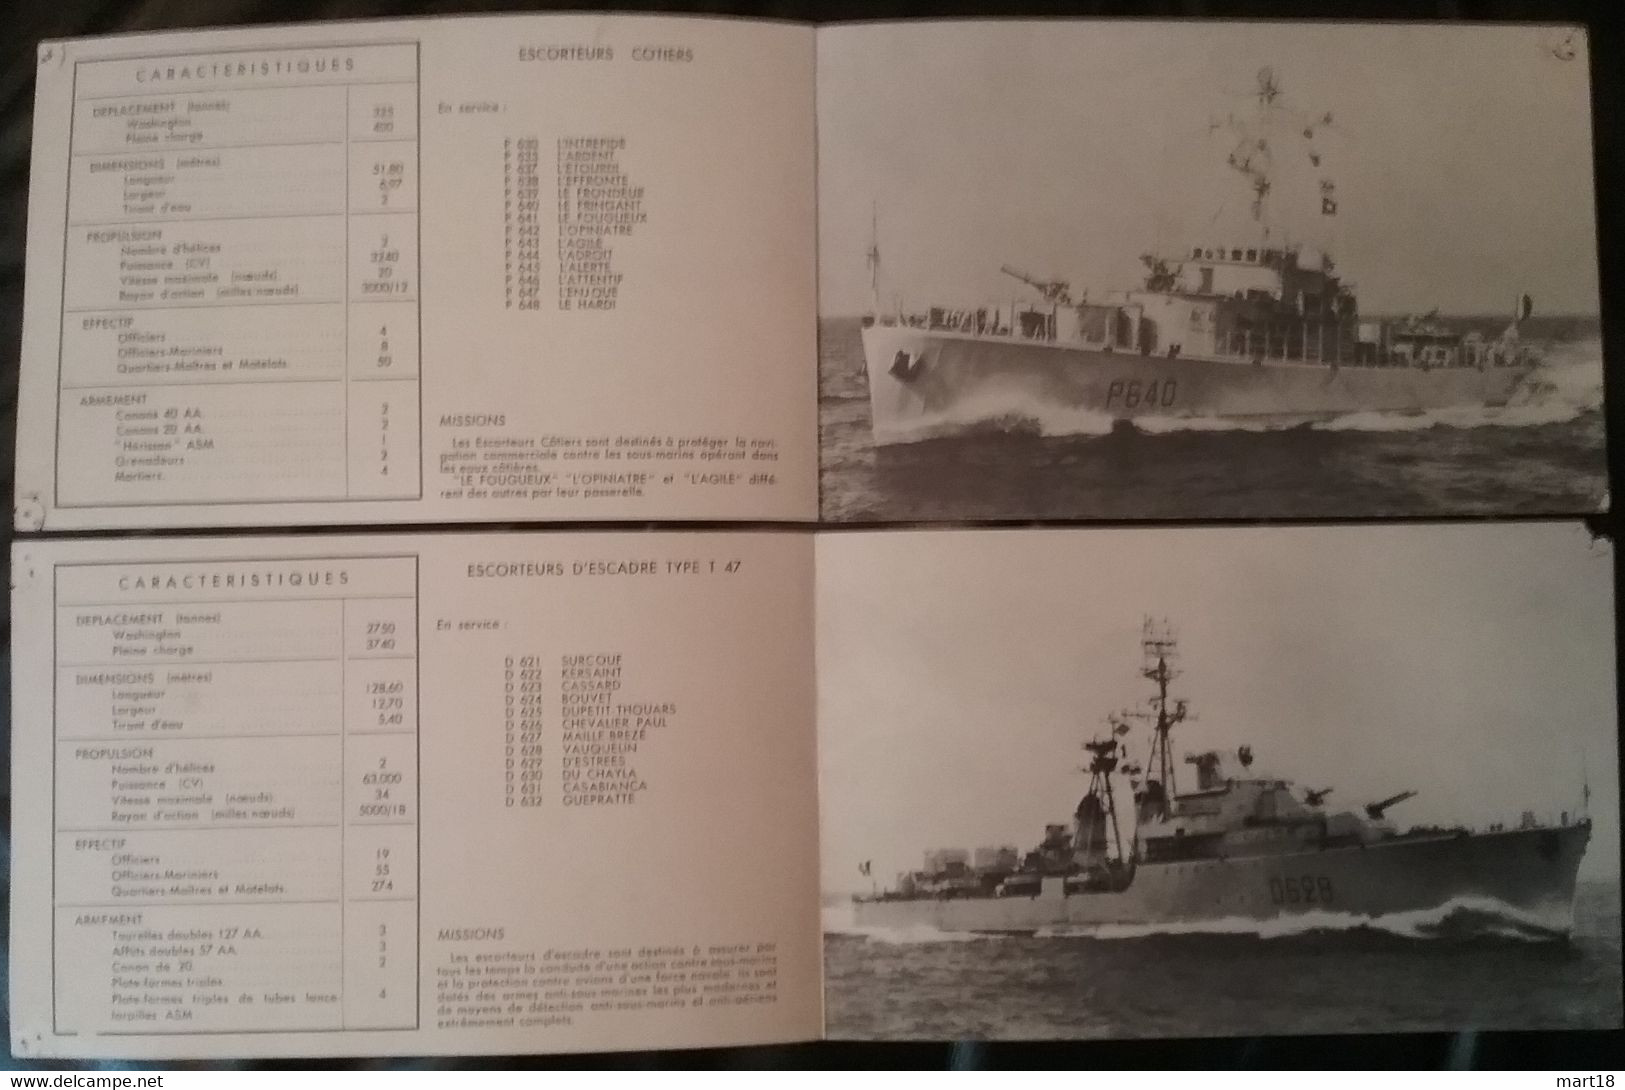 2 Fiches Techniques - Escorteurs Côtiers & D' Escadre T 47 - 1960 - - Schiffe